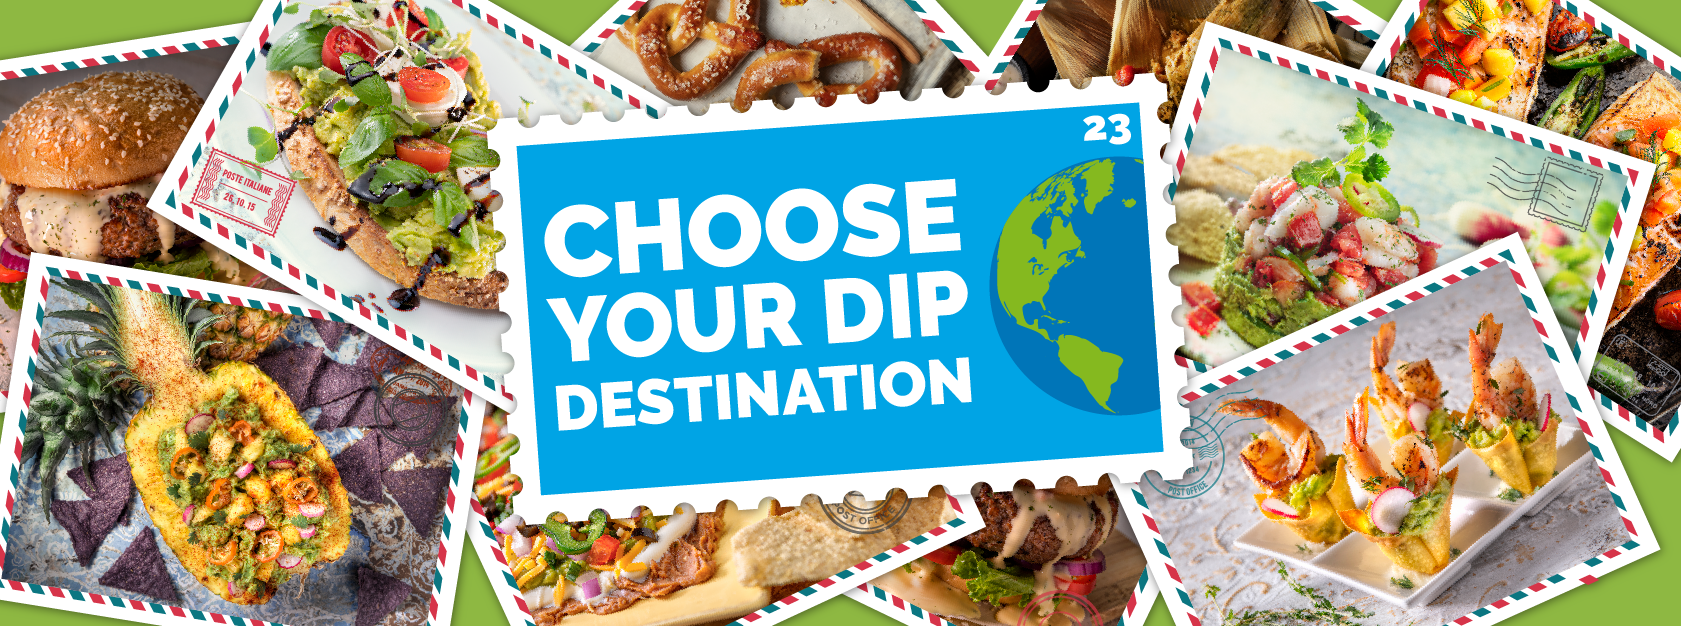 Choose your dip Destination